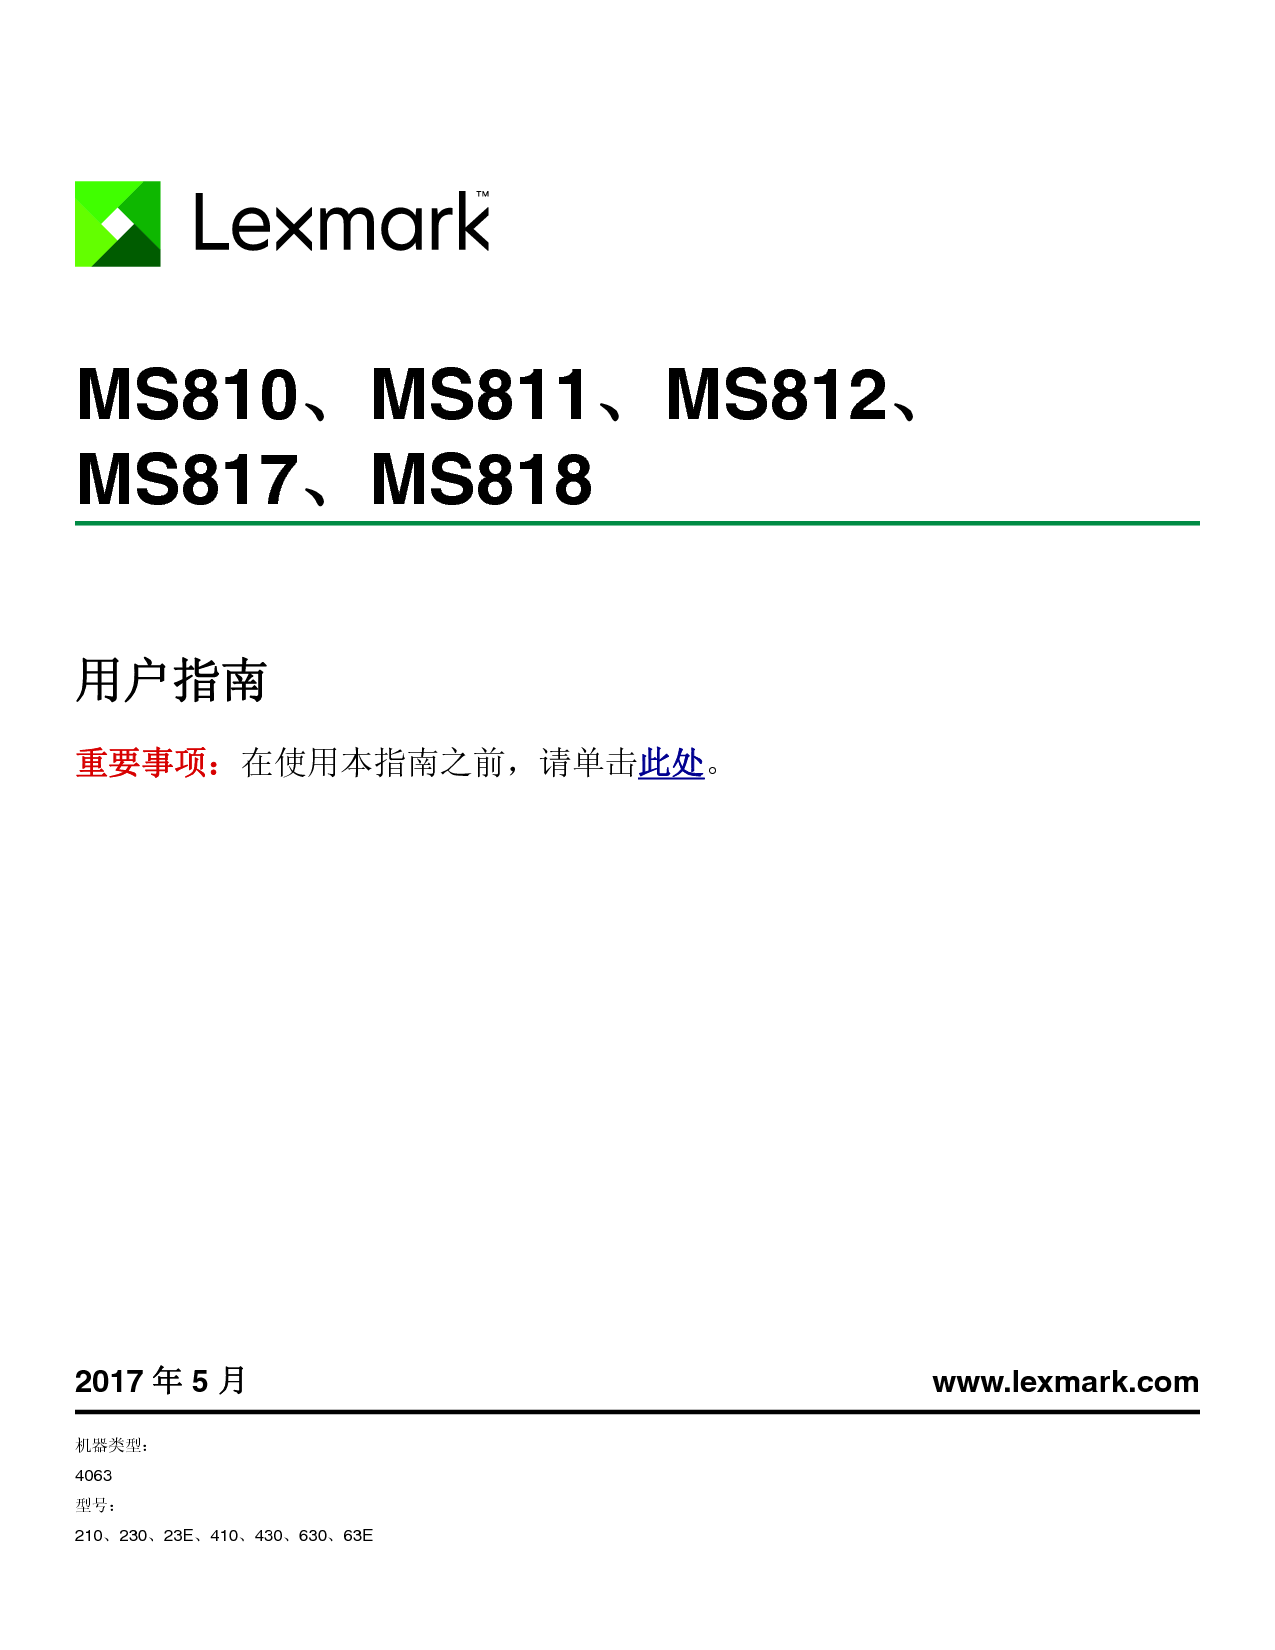 利盟 Lexmark MS810 用户指南 封面